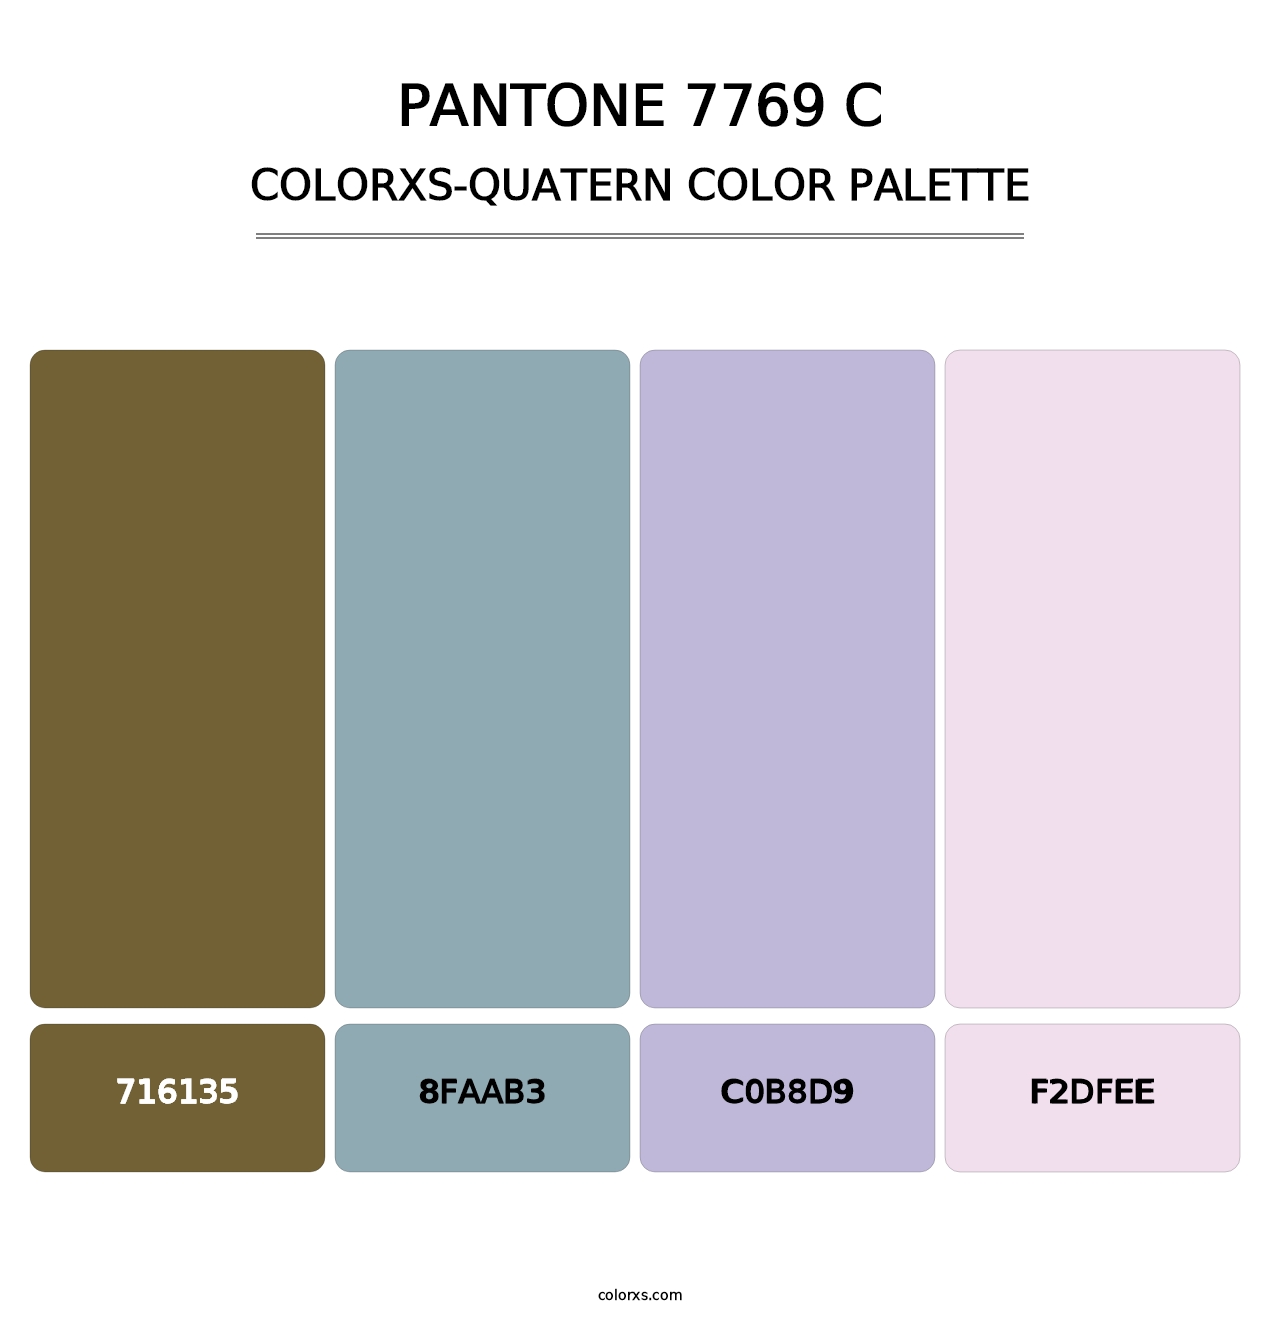 PANTONE 7769 C - Colorxs Quatern Palette